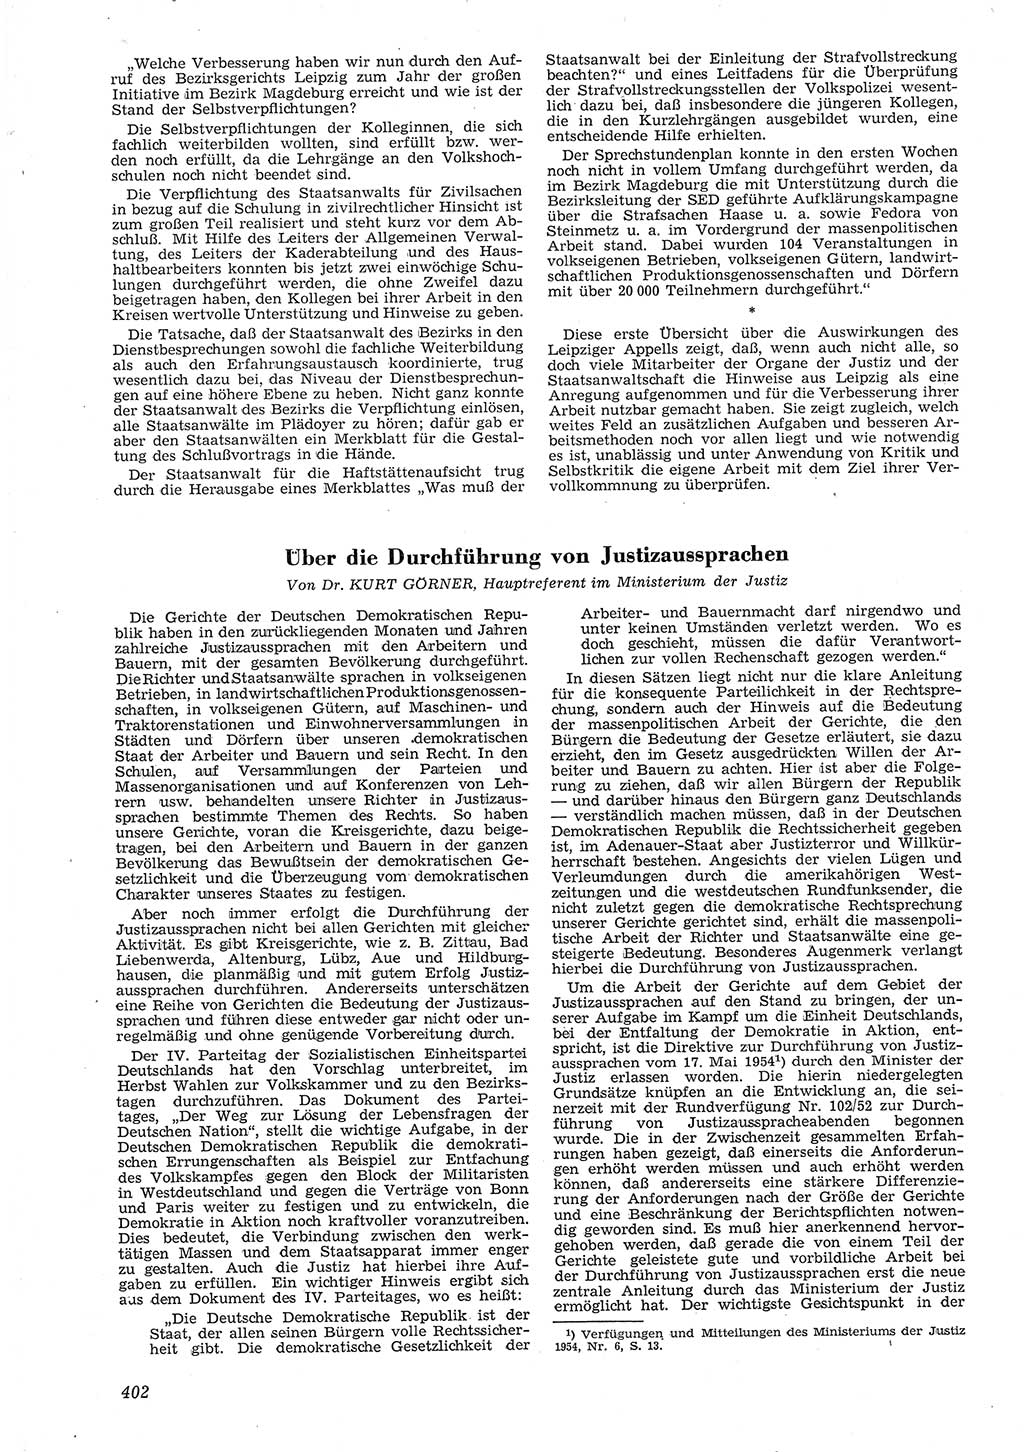 Neue Justiz (NJ), Zeitschrift für Recht und Rechtswissenschaft [Deutsche Demokratische Republik (DDR)], 8. Jahrgang 1954, Seite 402 (NJ DDR 1954, S. 402)